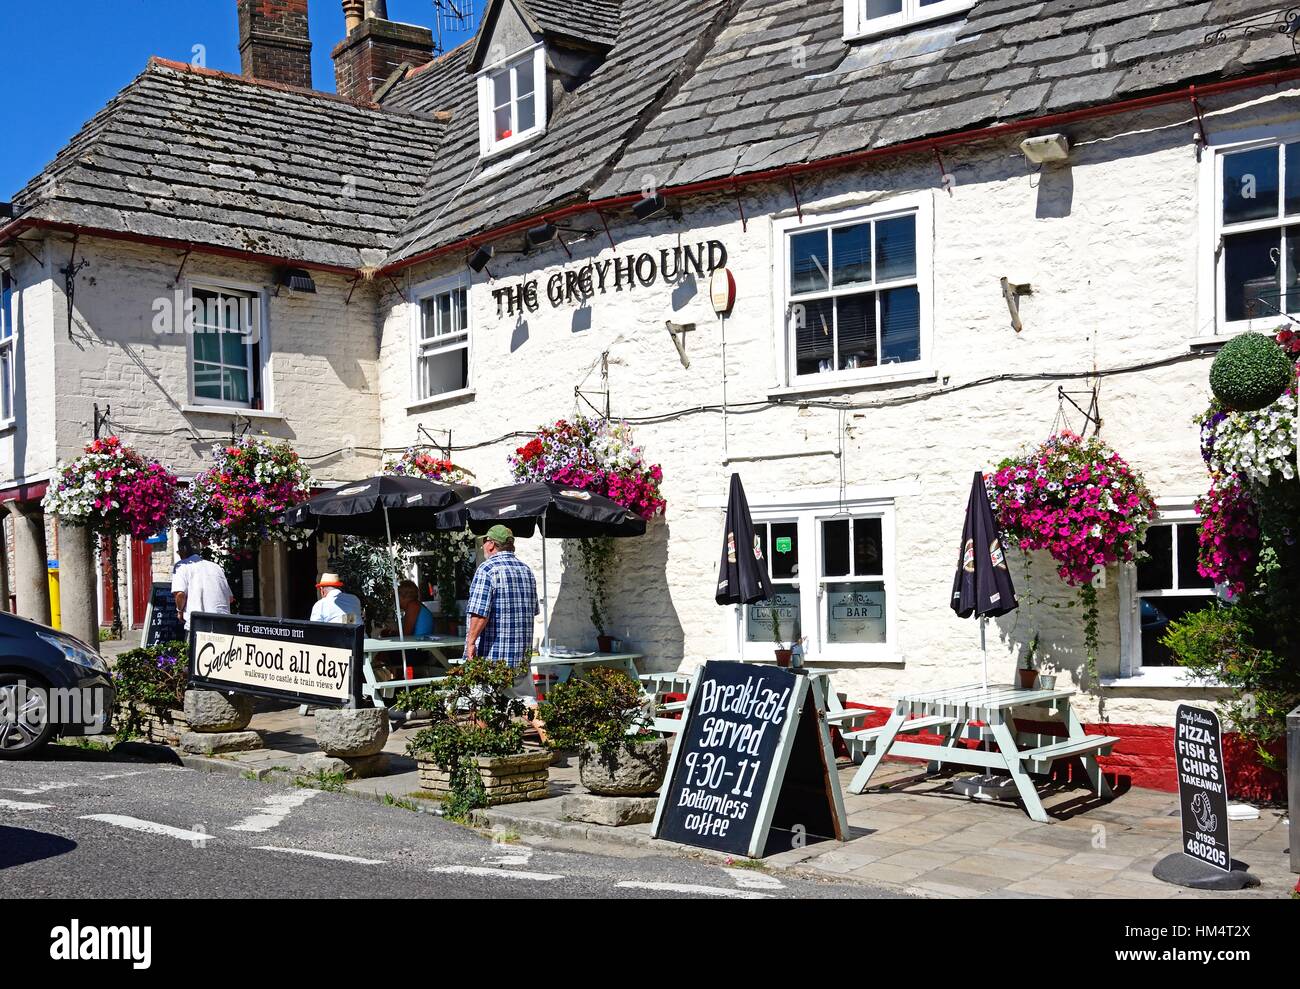 Vue de la Greyhound pub dans le centre du village, M. Corfe, Dorset, Angleterre, Royaume-Uni, Europe de l'Ouest. Banque D'Images